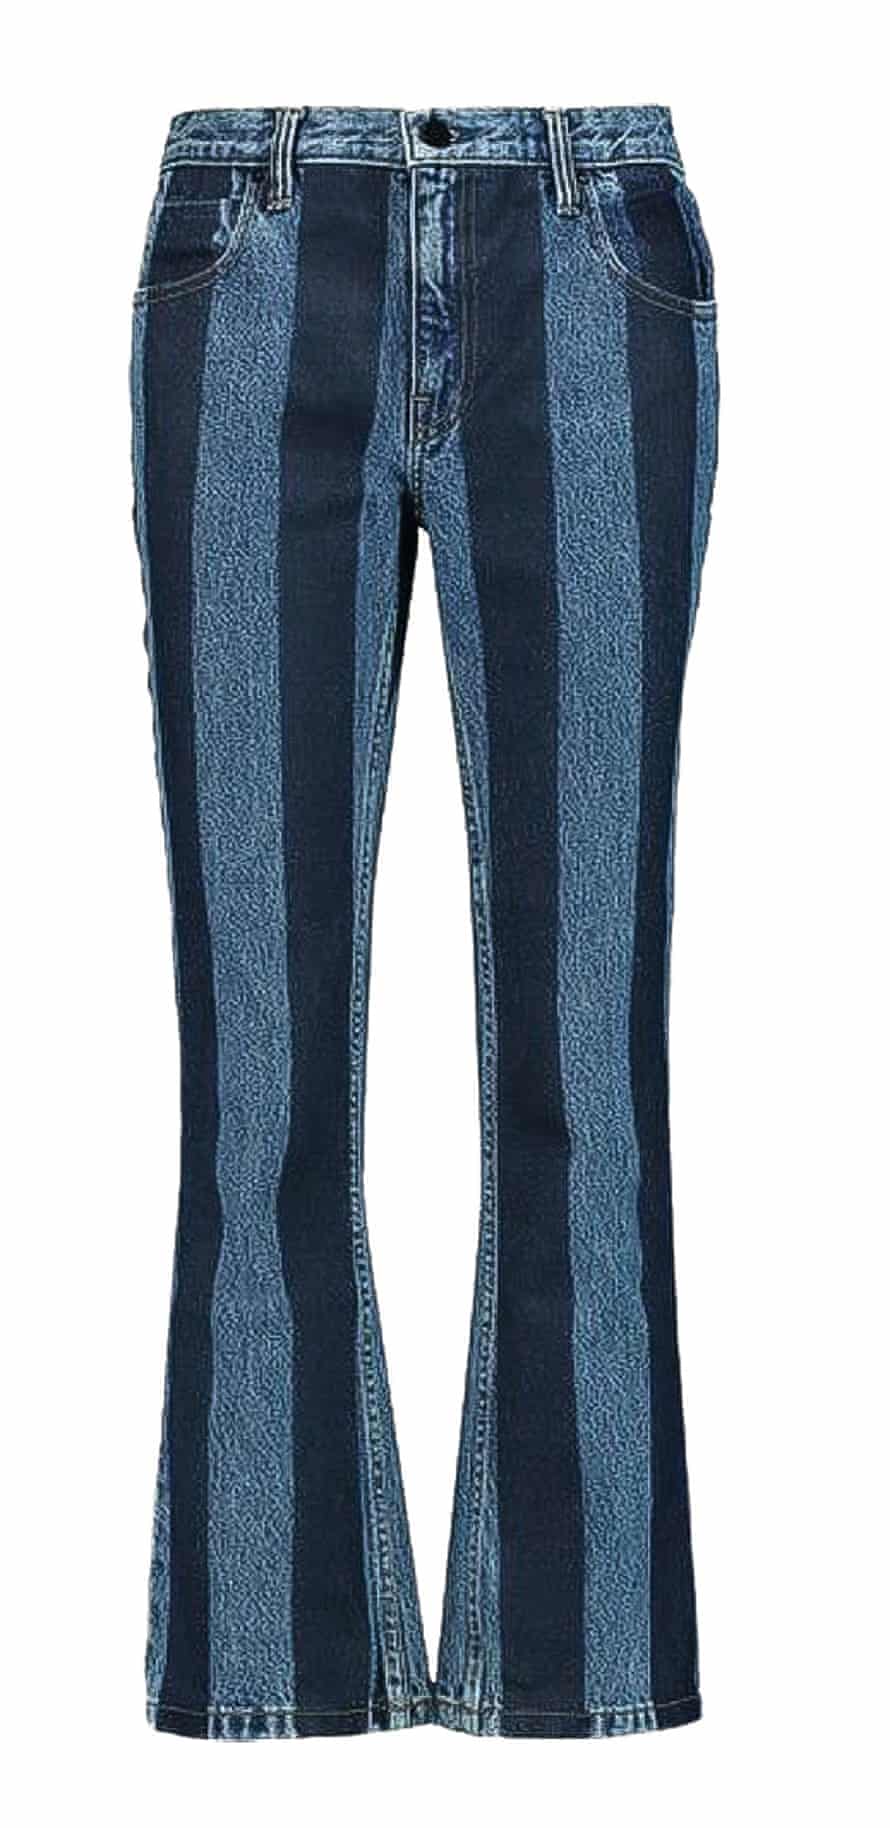 Striped jeans